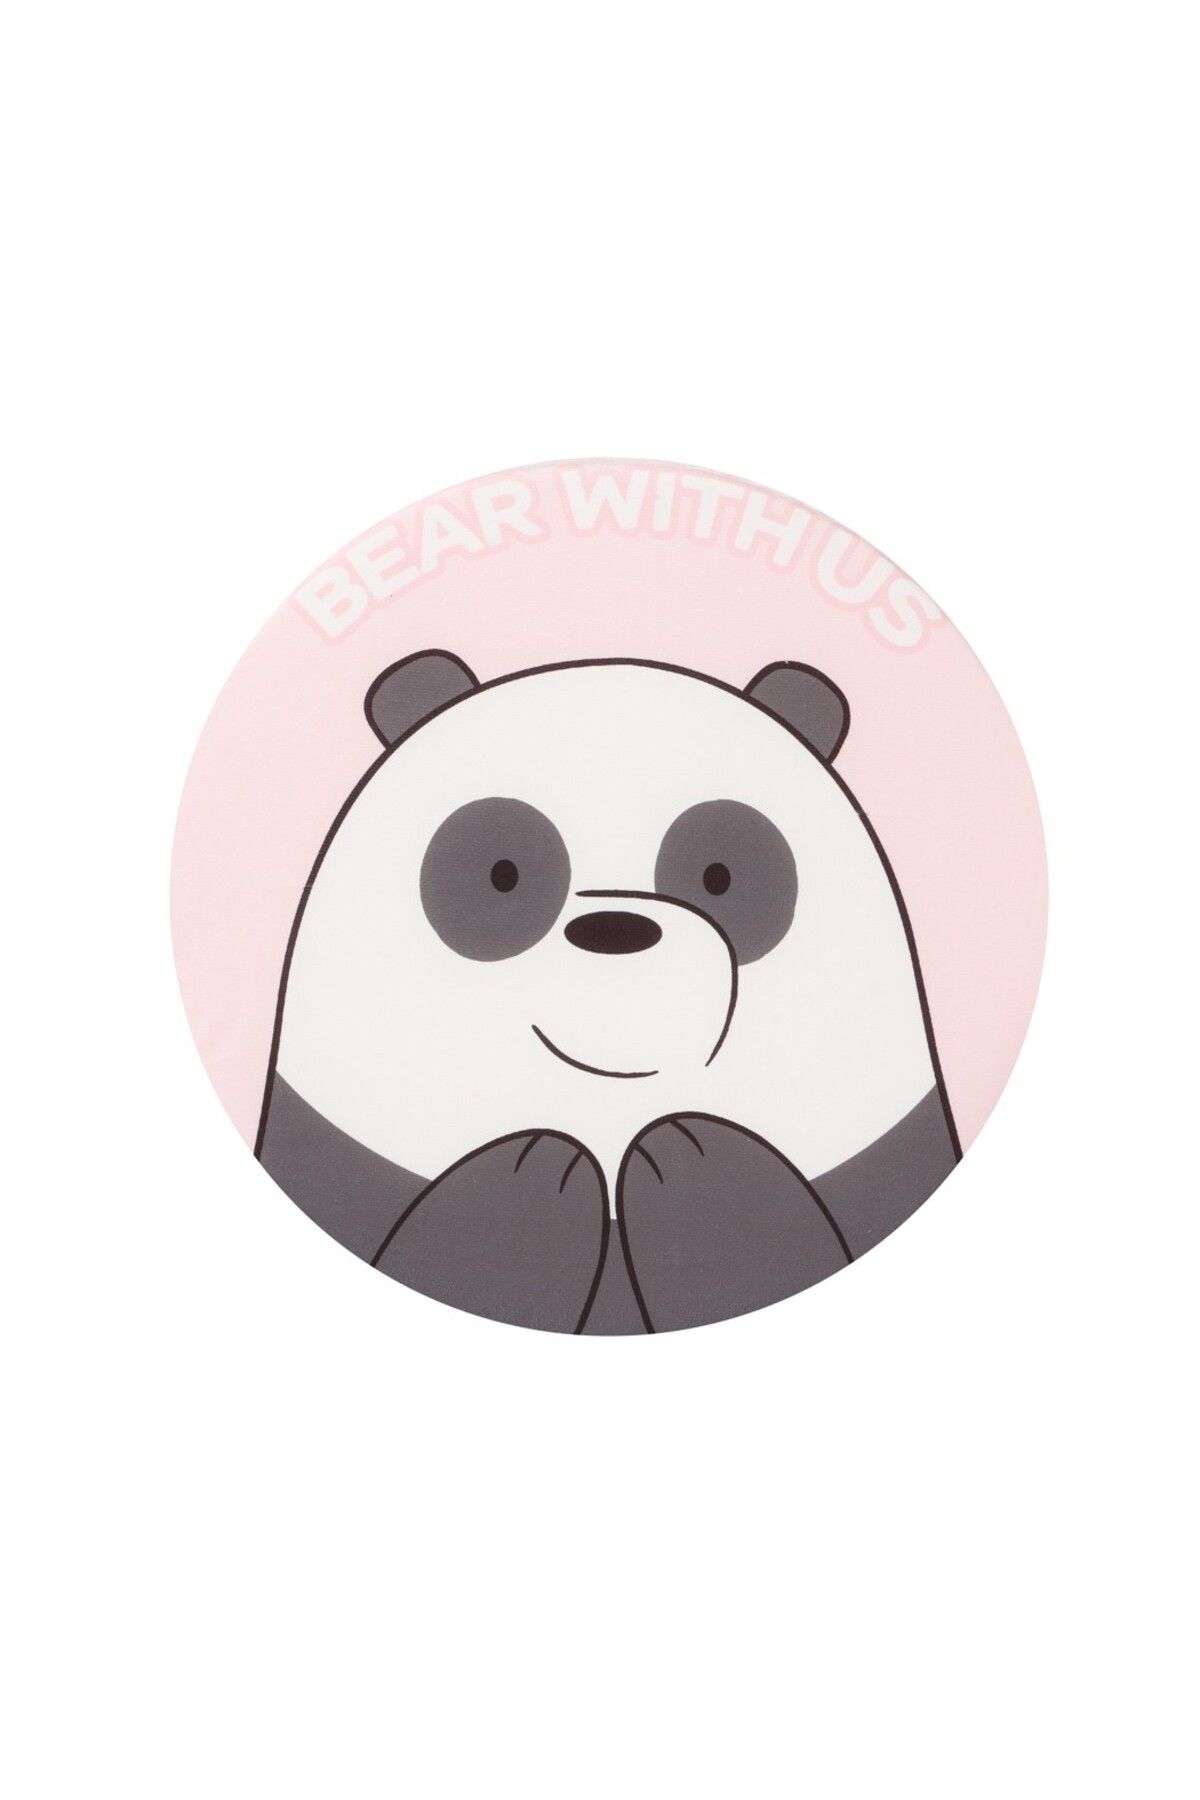 Miniso We Bare Bears Lisanslı Yuvarlak Yastık - Panda 40 cm